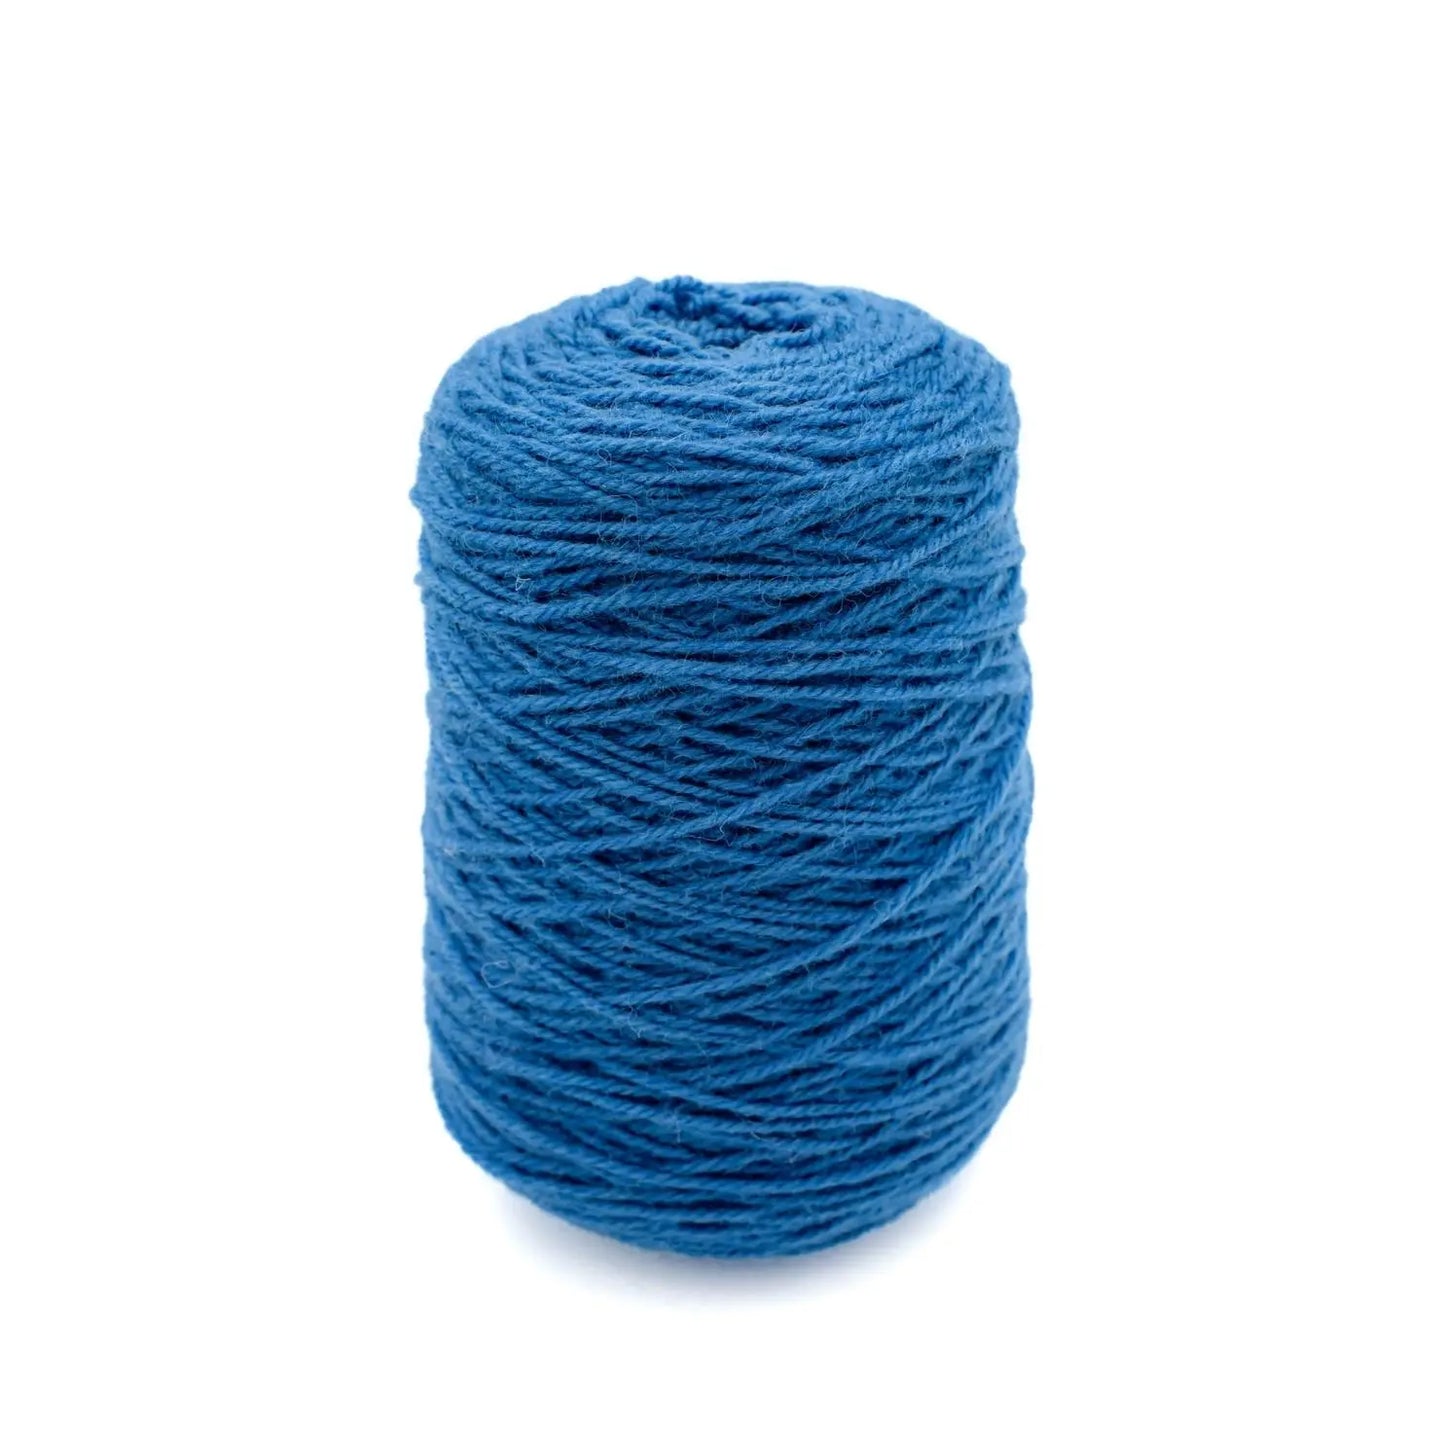 Wool yarn Blue CG